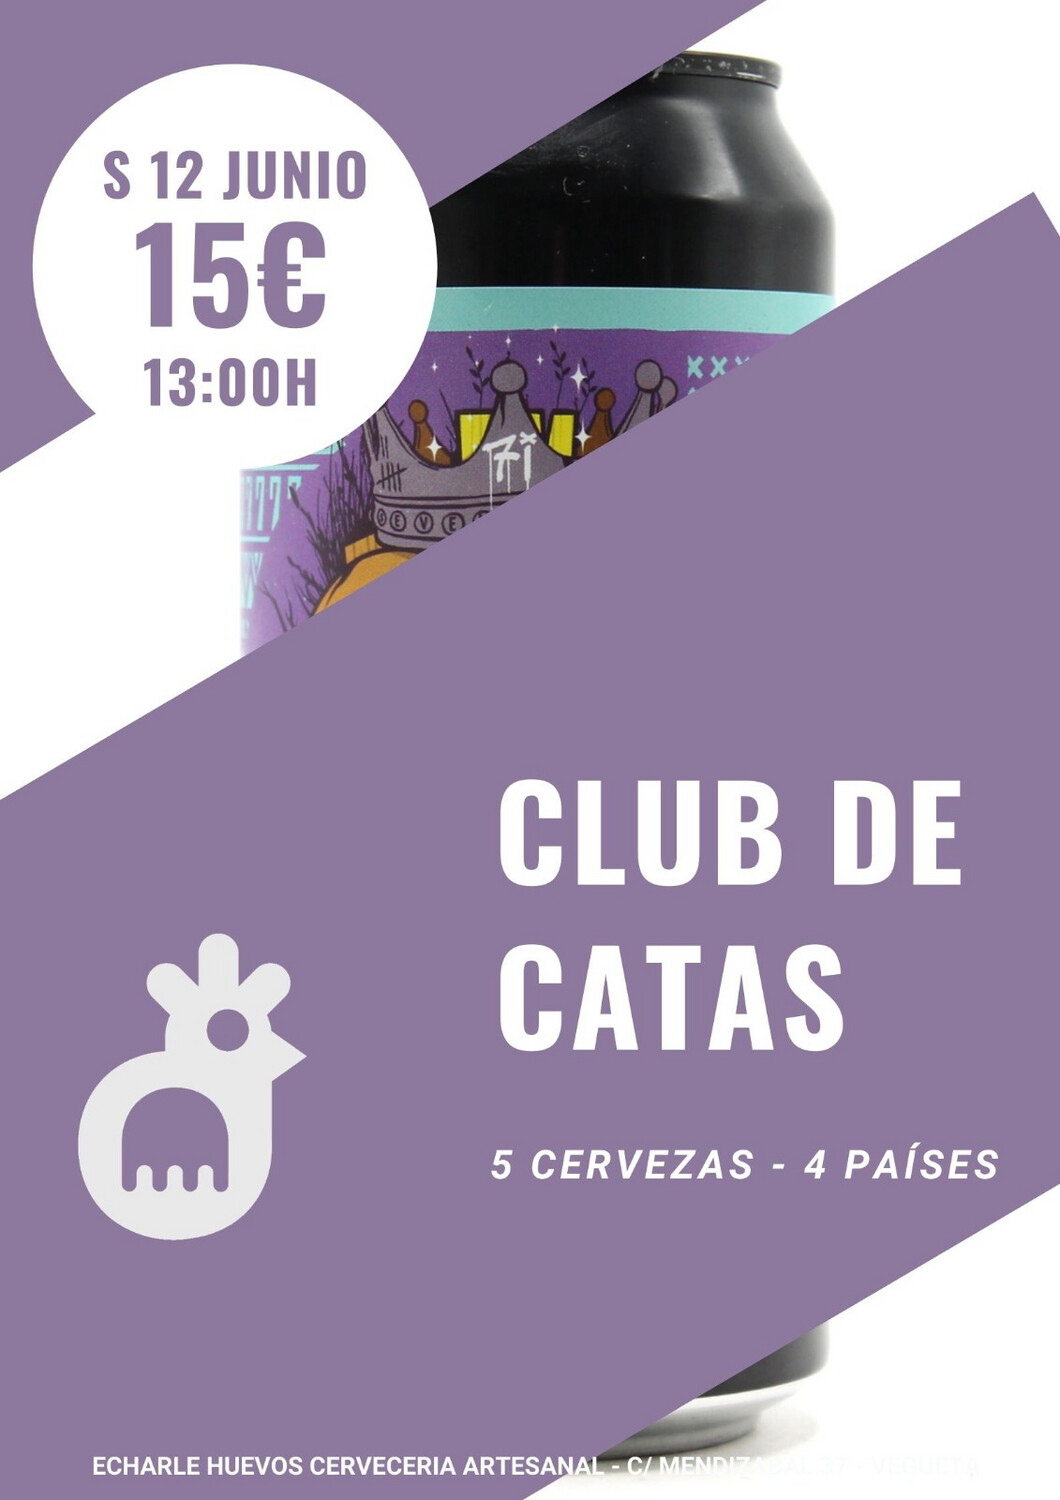 CLUB DE CATAS en nuestra terracita S 12 JUNIO